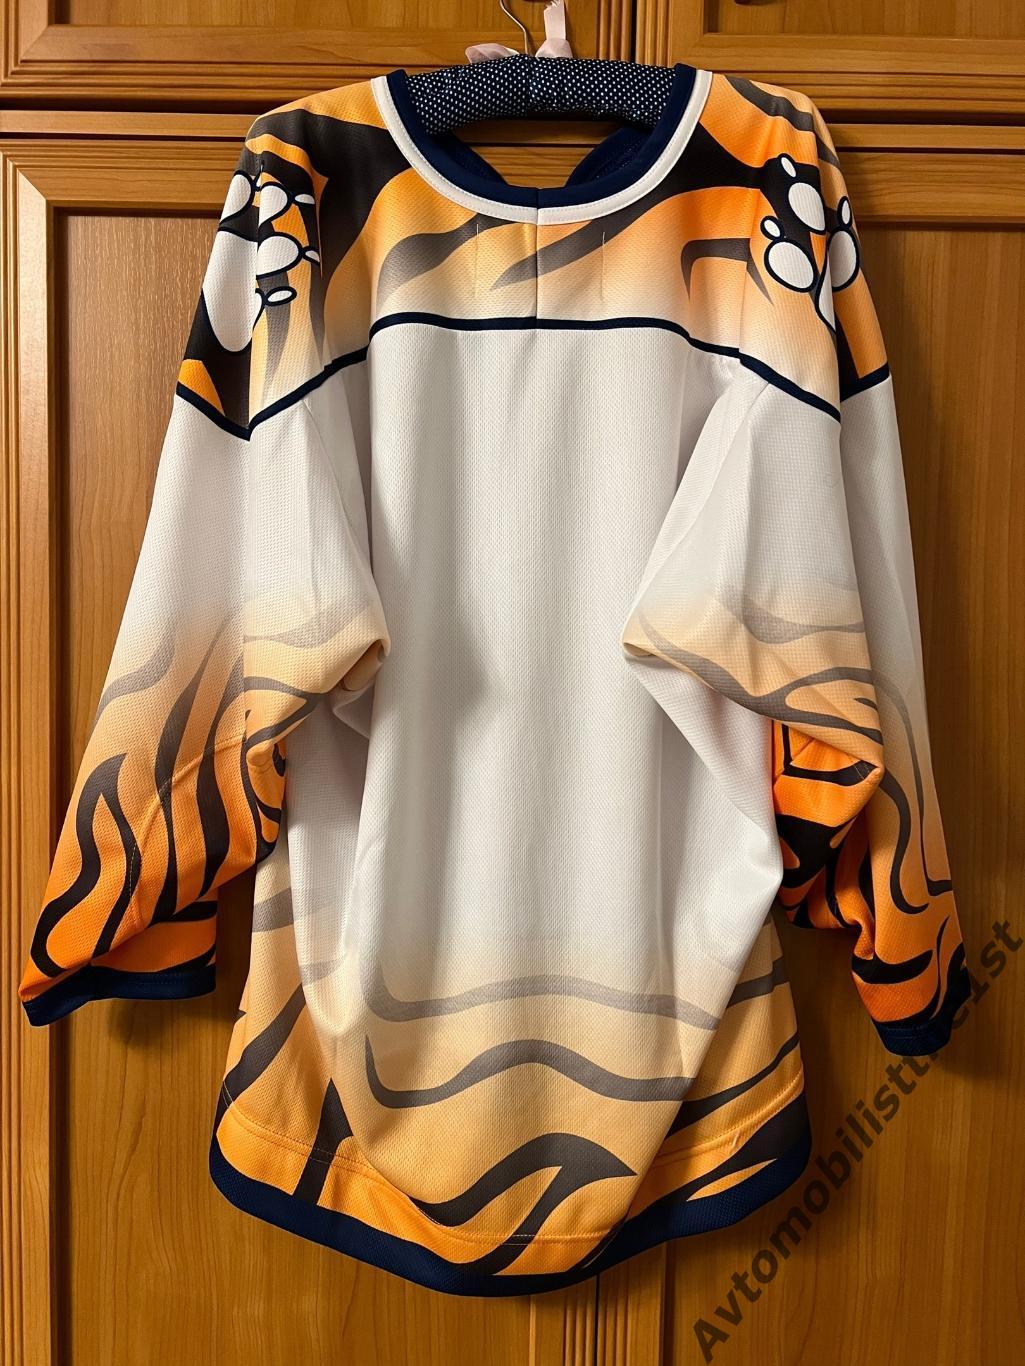 Хоккейный свитер джерси форма МХК Амурские Тигры Хабаровск старый логотип 1